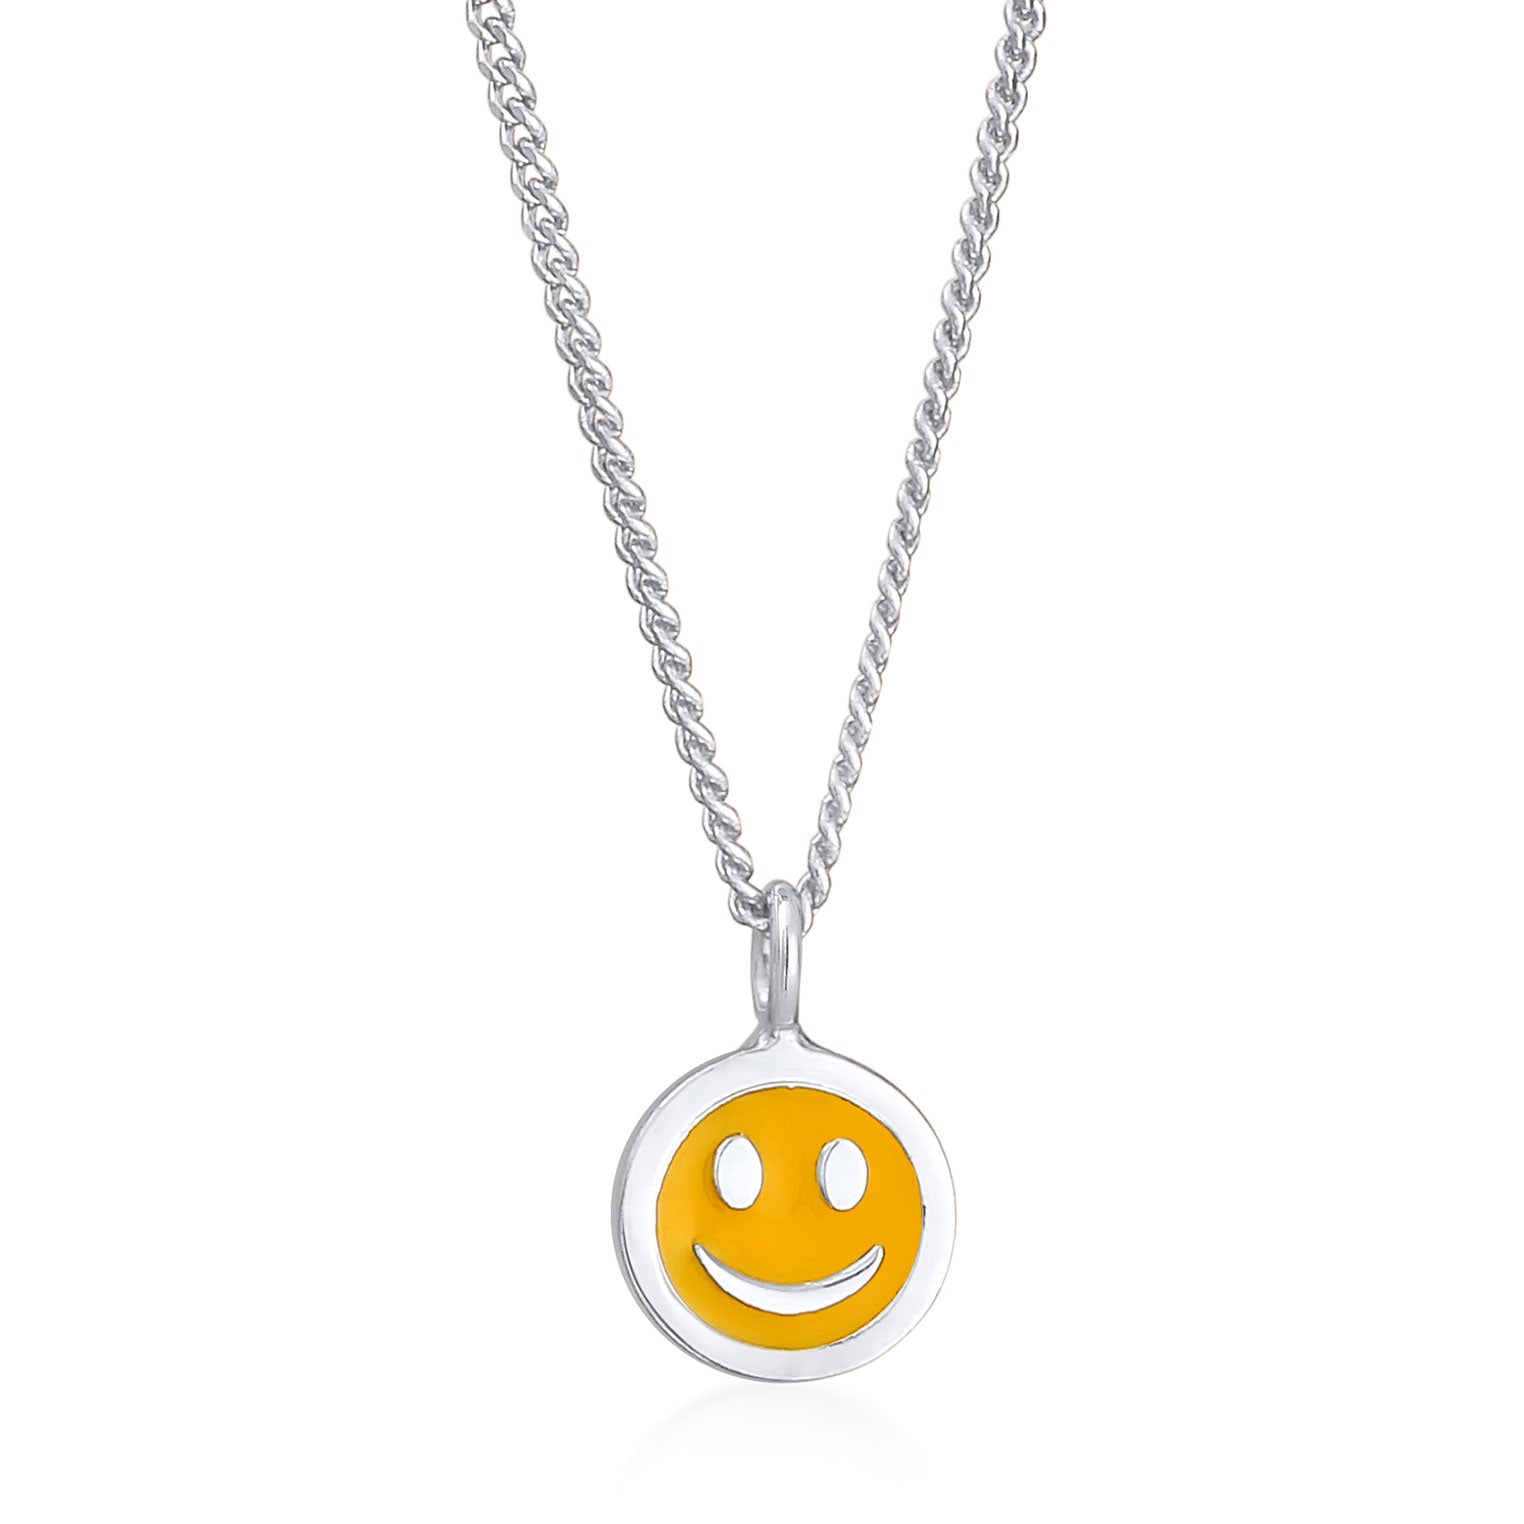 Silber - Elli | Halskette mit Smiling Face Anhänger | Emaille (Orange) | 925er Sterling Silber